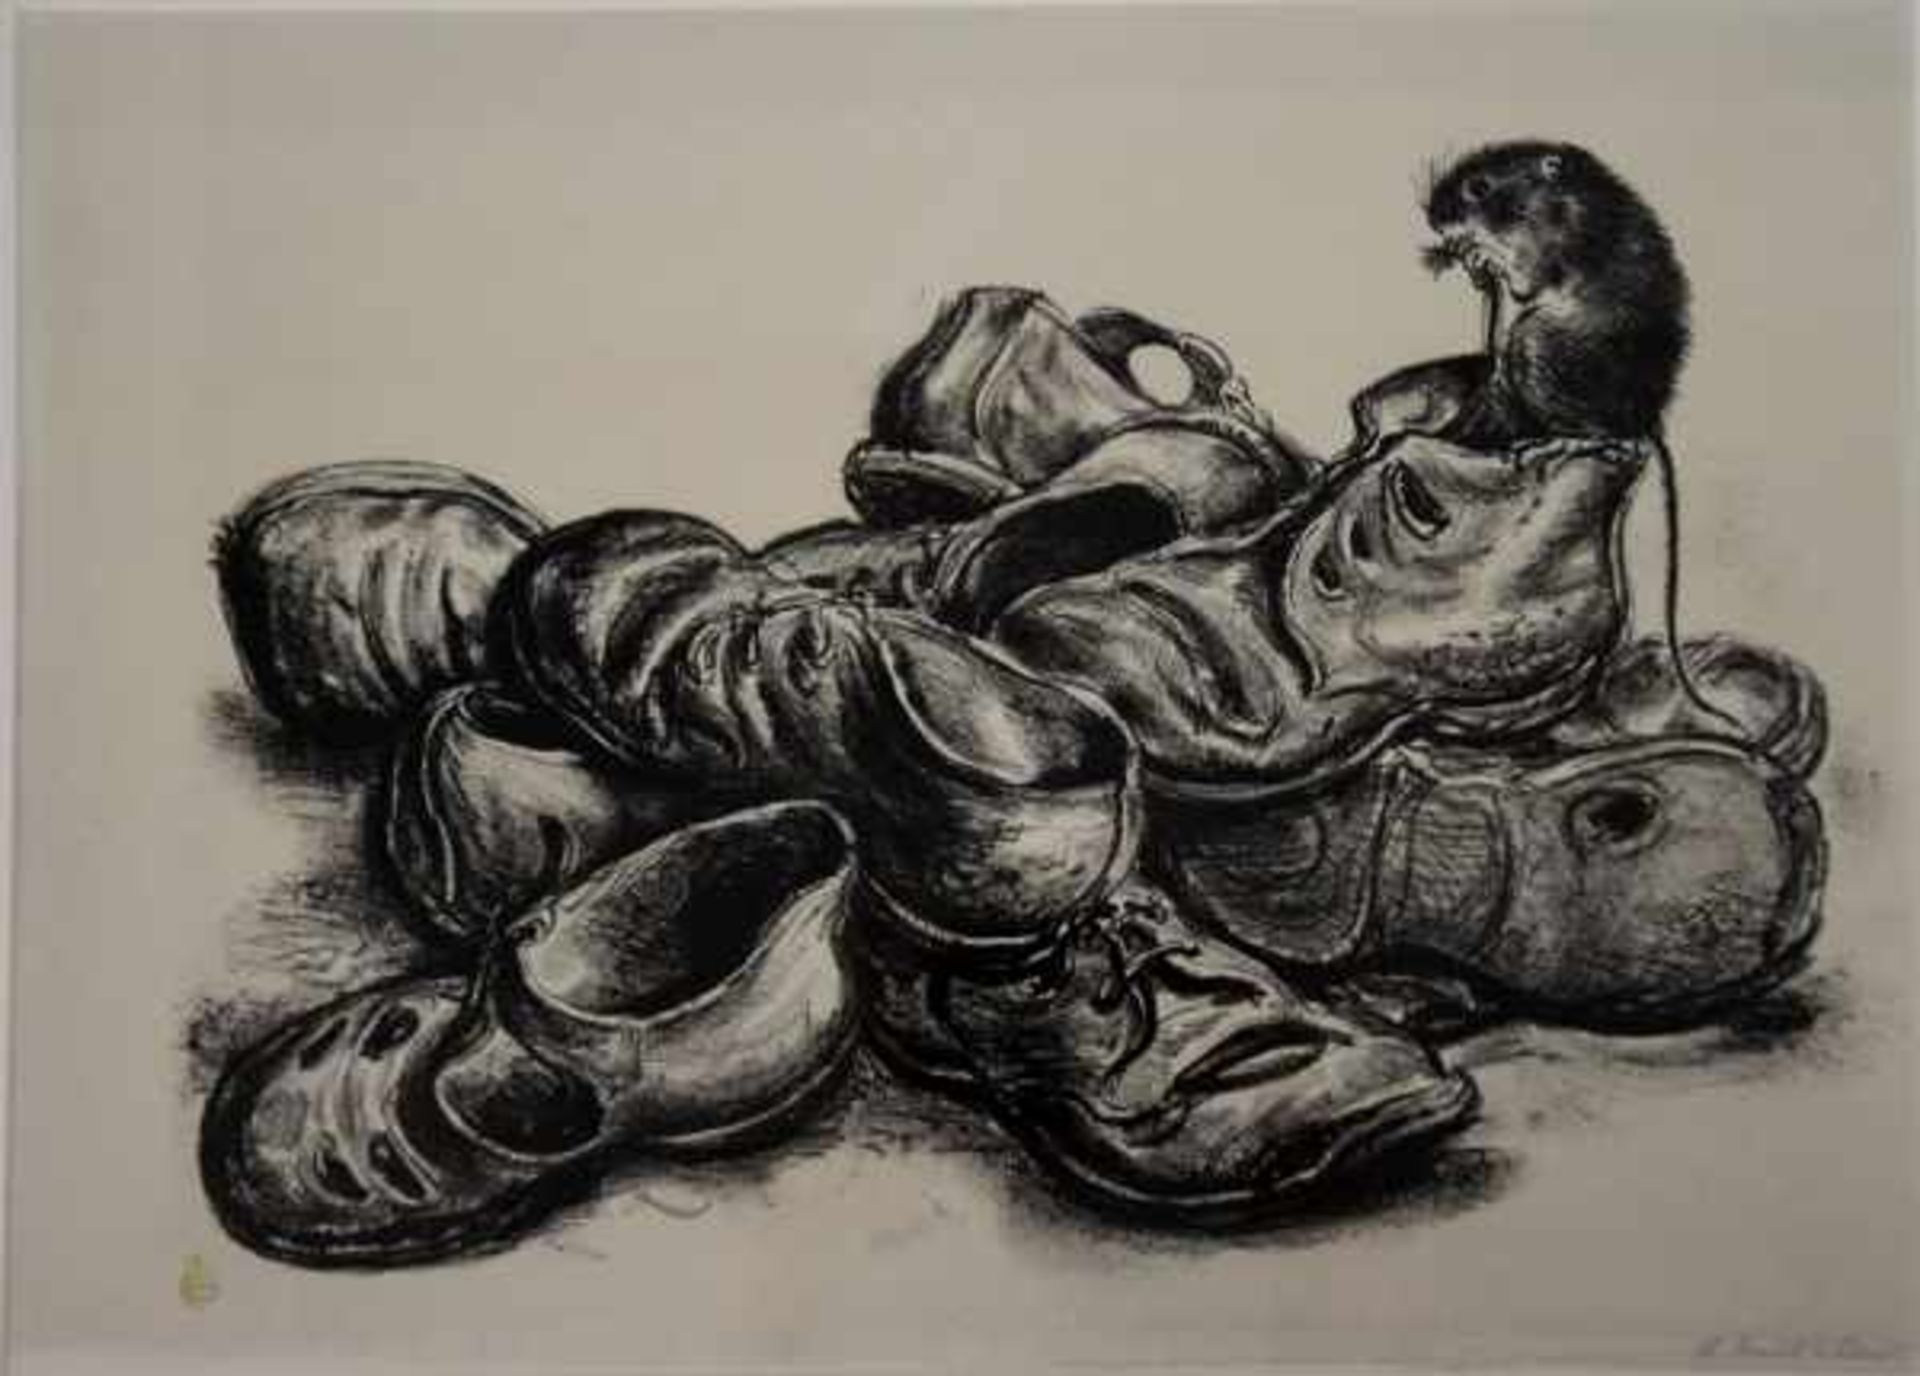 WEBER Andreas Paul (1893 Arnstadt - 1980 Schretstaken) "Maus auf einem Berg von Schuhen", Litho in